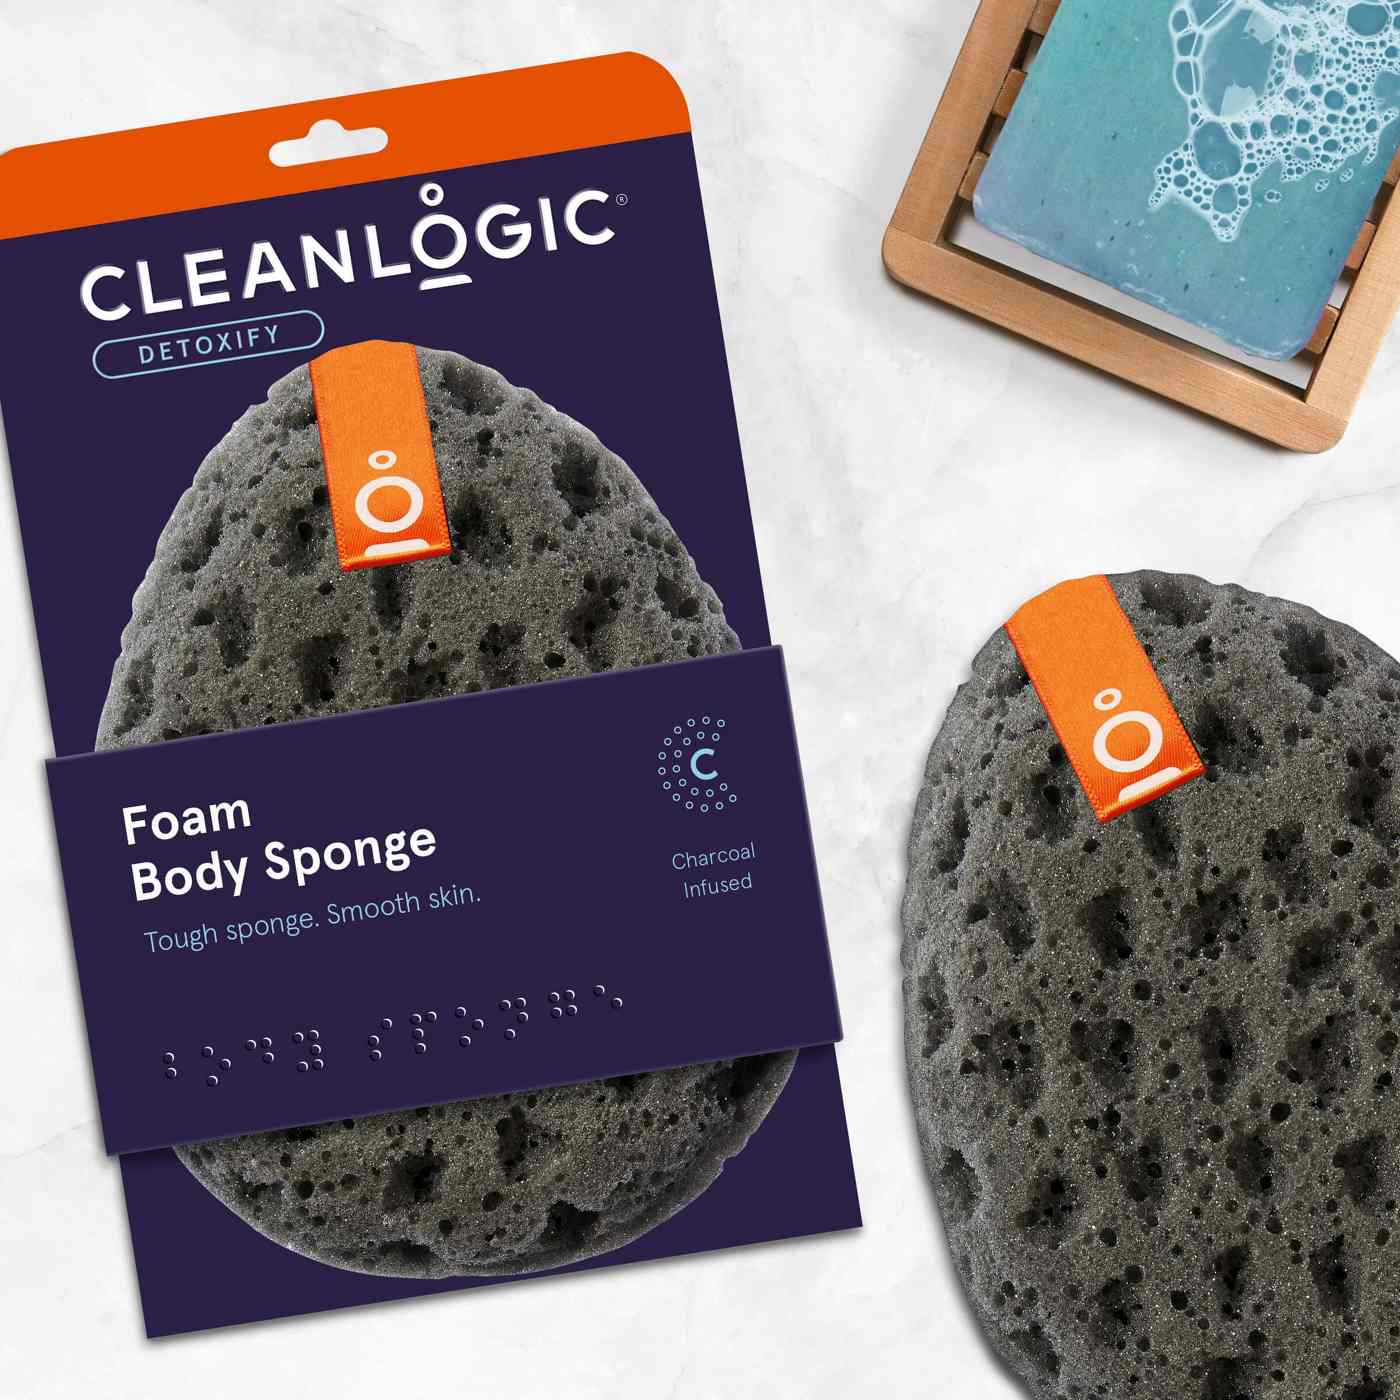 Cleanlogic Detoxify Foam Body Sponge; image 2 of 2